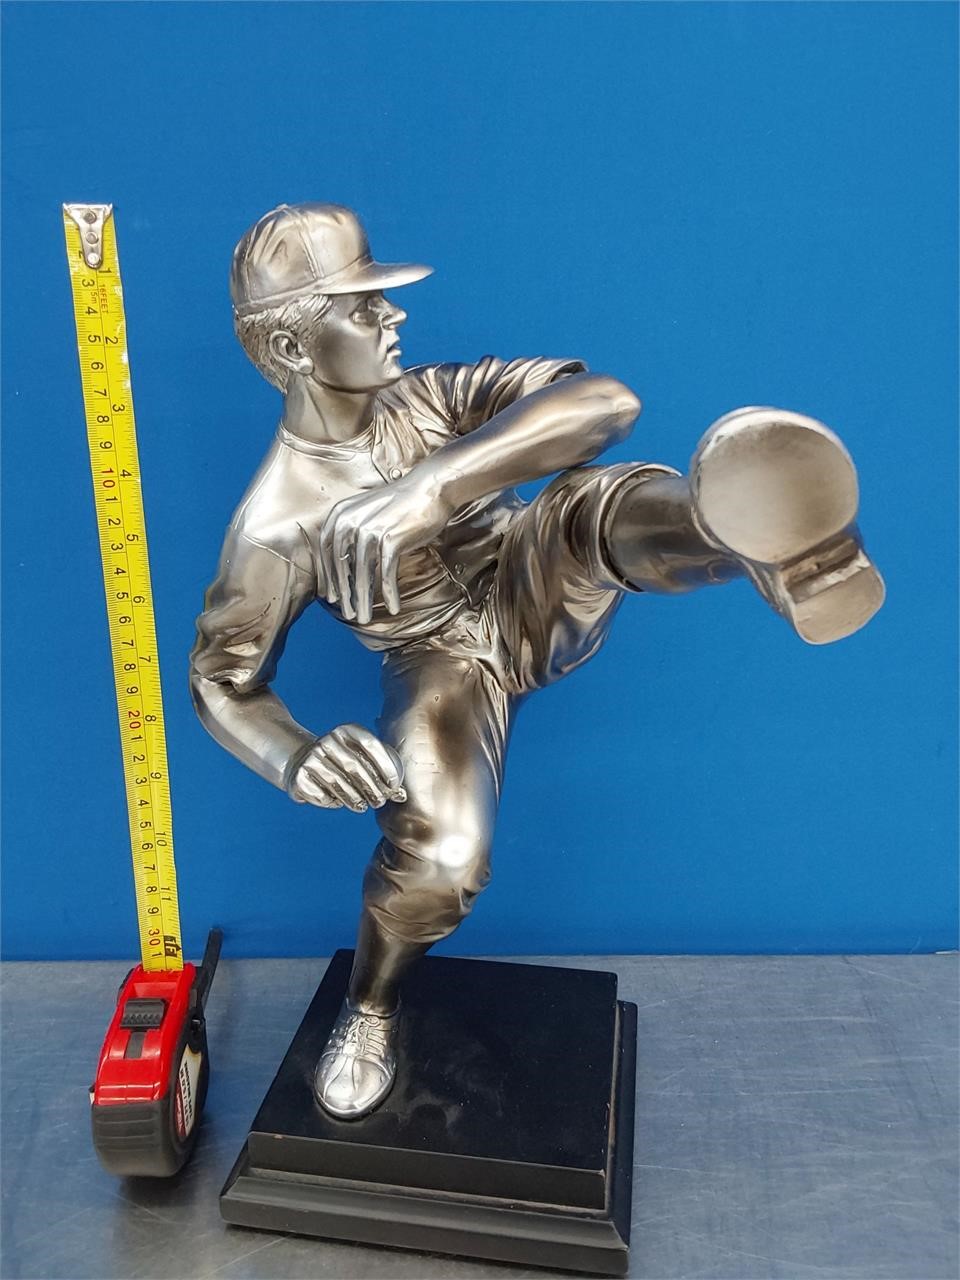 ~Baseball Pitcher Statue